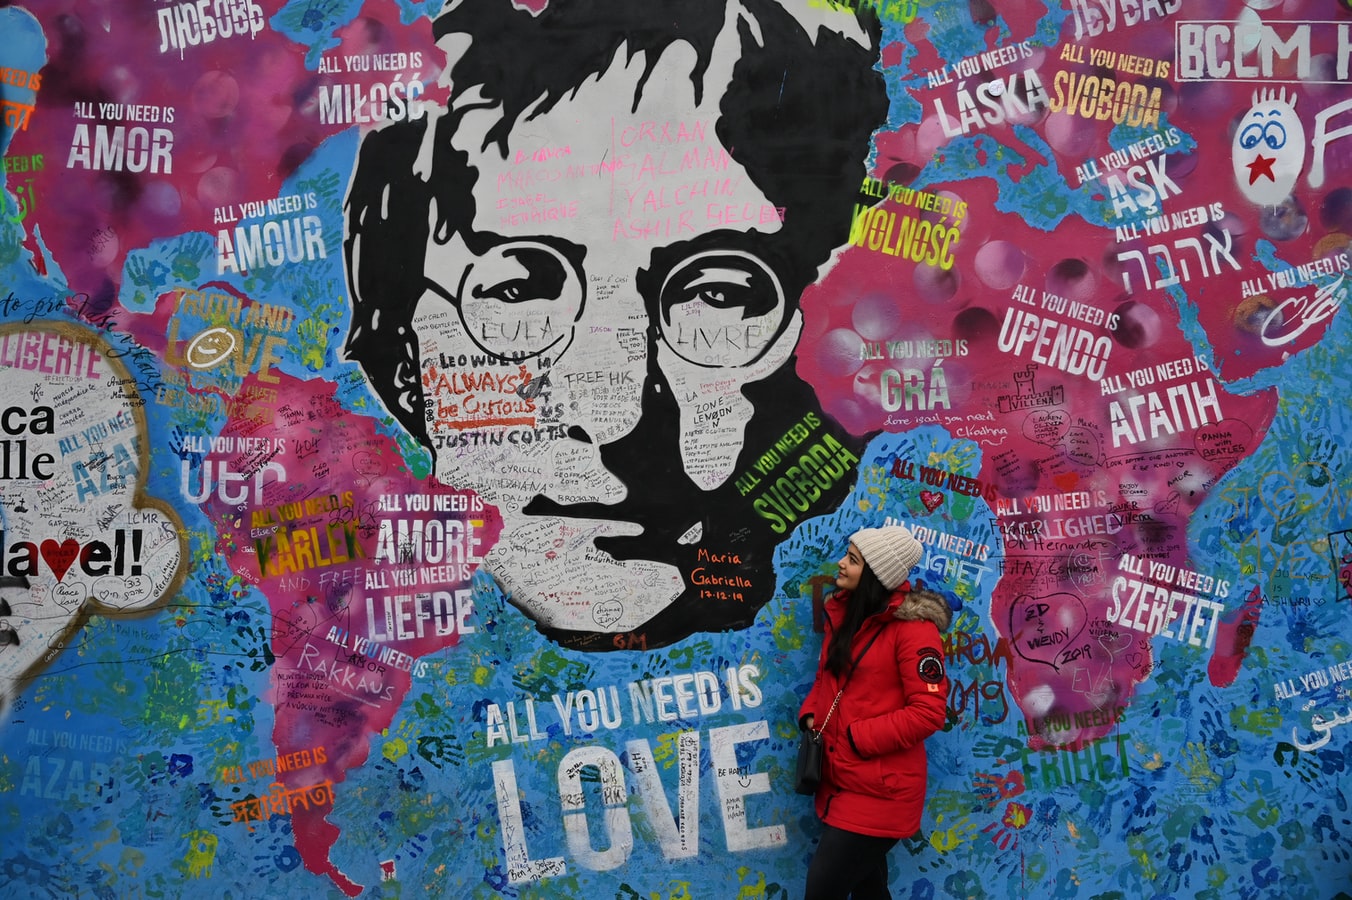 El legado musical de John Lennon sigue vigente luego de 40 años de su partida (Foto Prensa Libre: Unsplash)